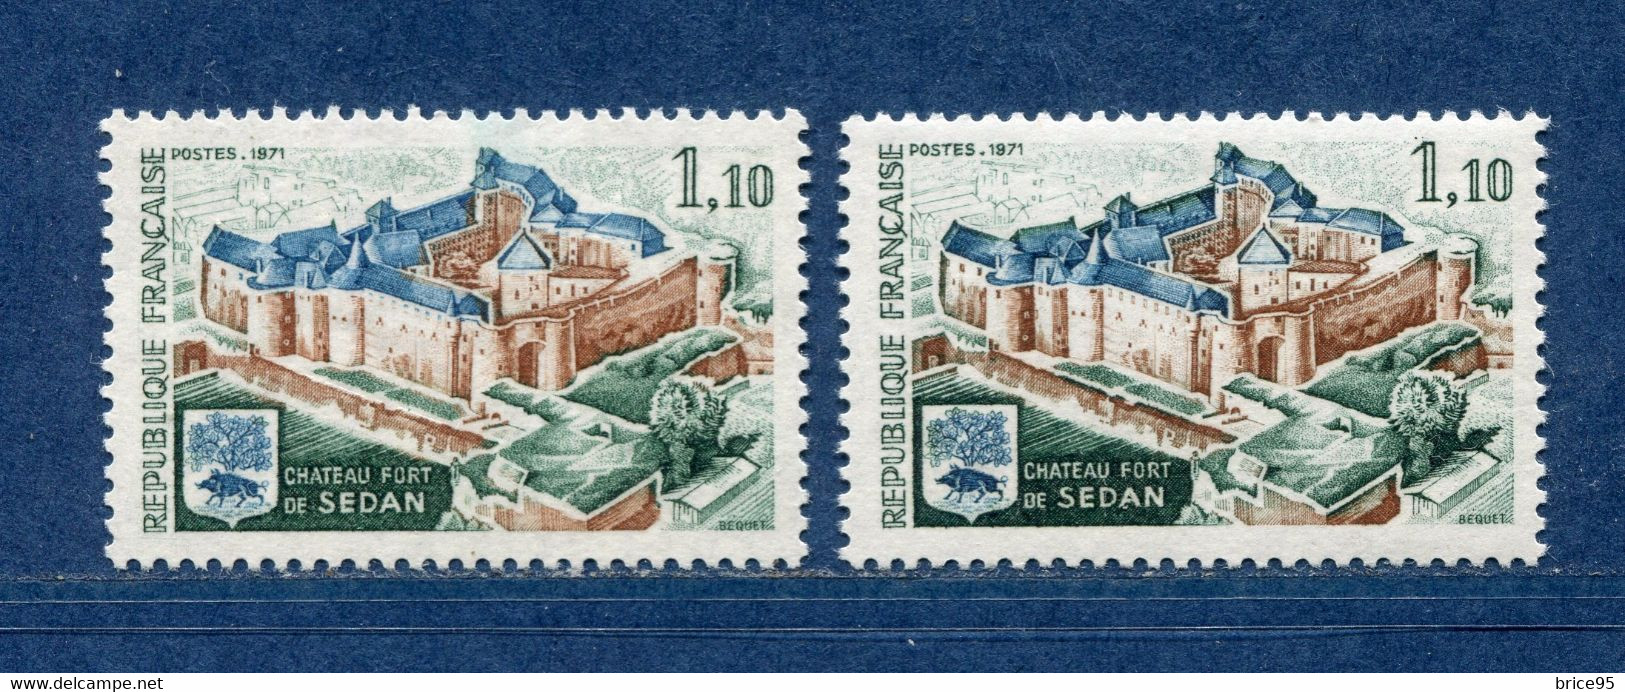 ⭐ France - Variété - YT N° 1686 - Couleurs - Pétouille - Neuf Sans Charnière - 1971 ⭐ - Unused Stamps